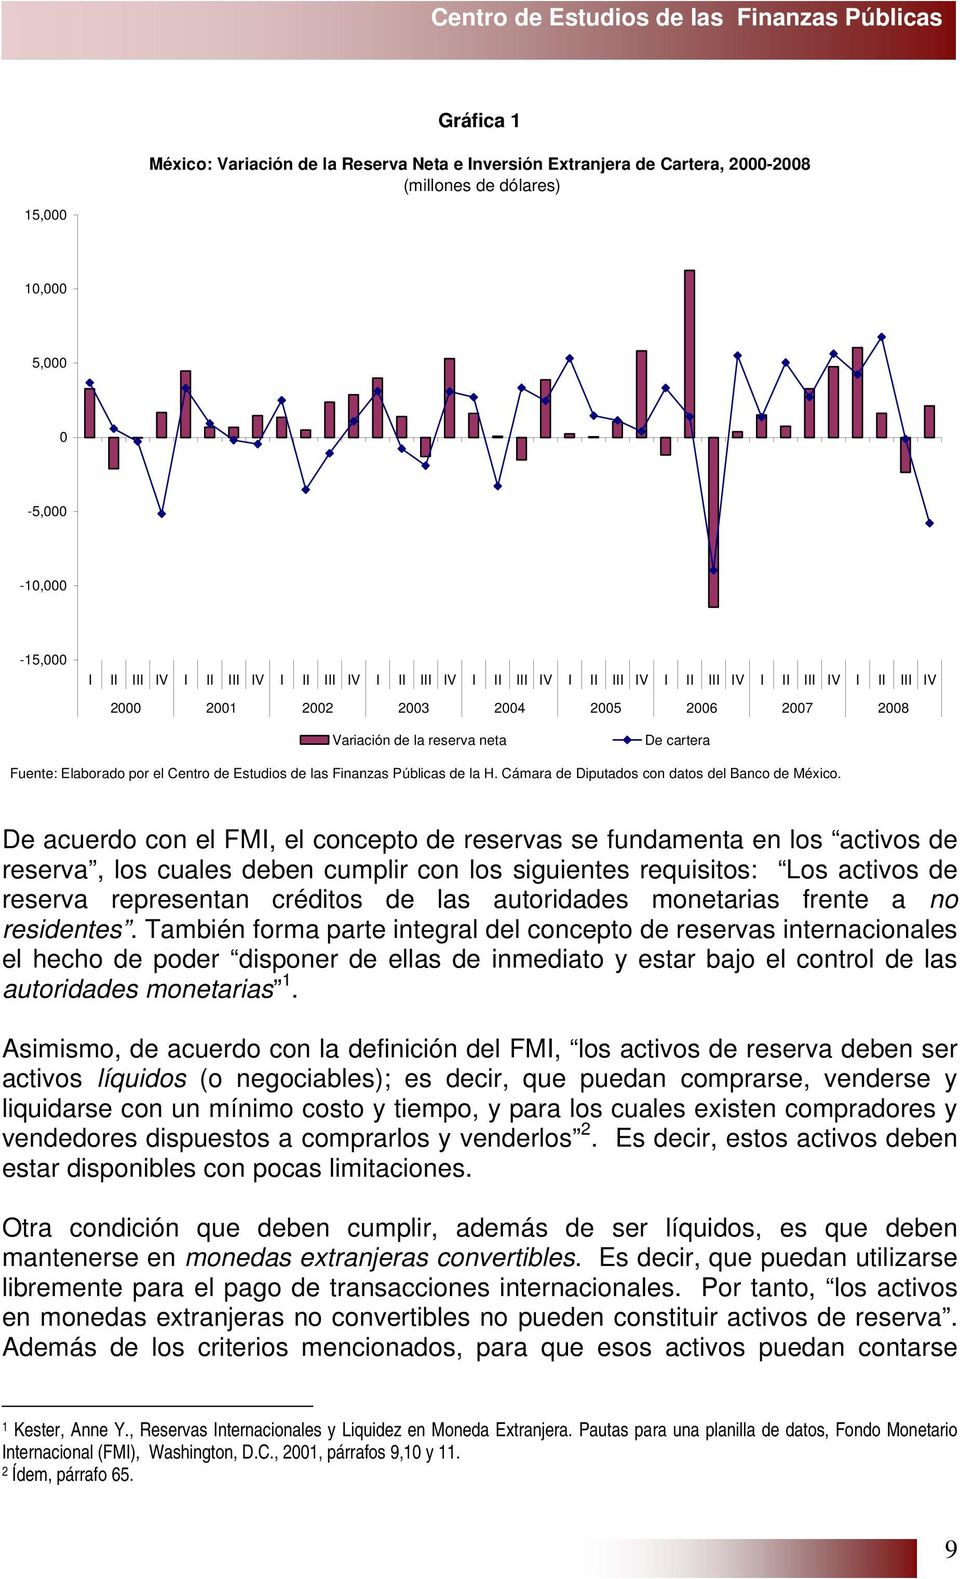 Fuente: Elaborado por el Centro de Estudios de las Finanzas Públicas de la H. Cámara de Diputados con datos del Banco de México.